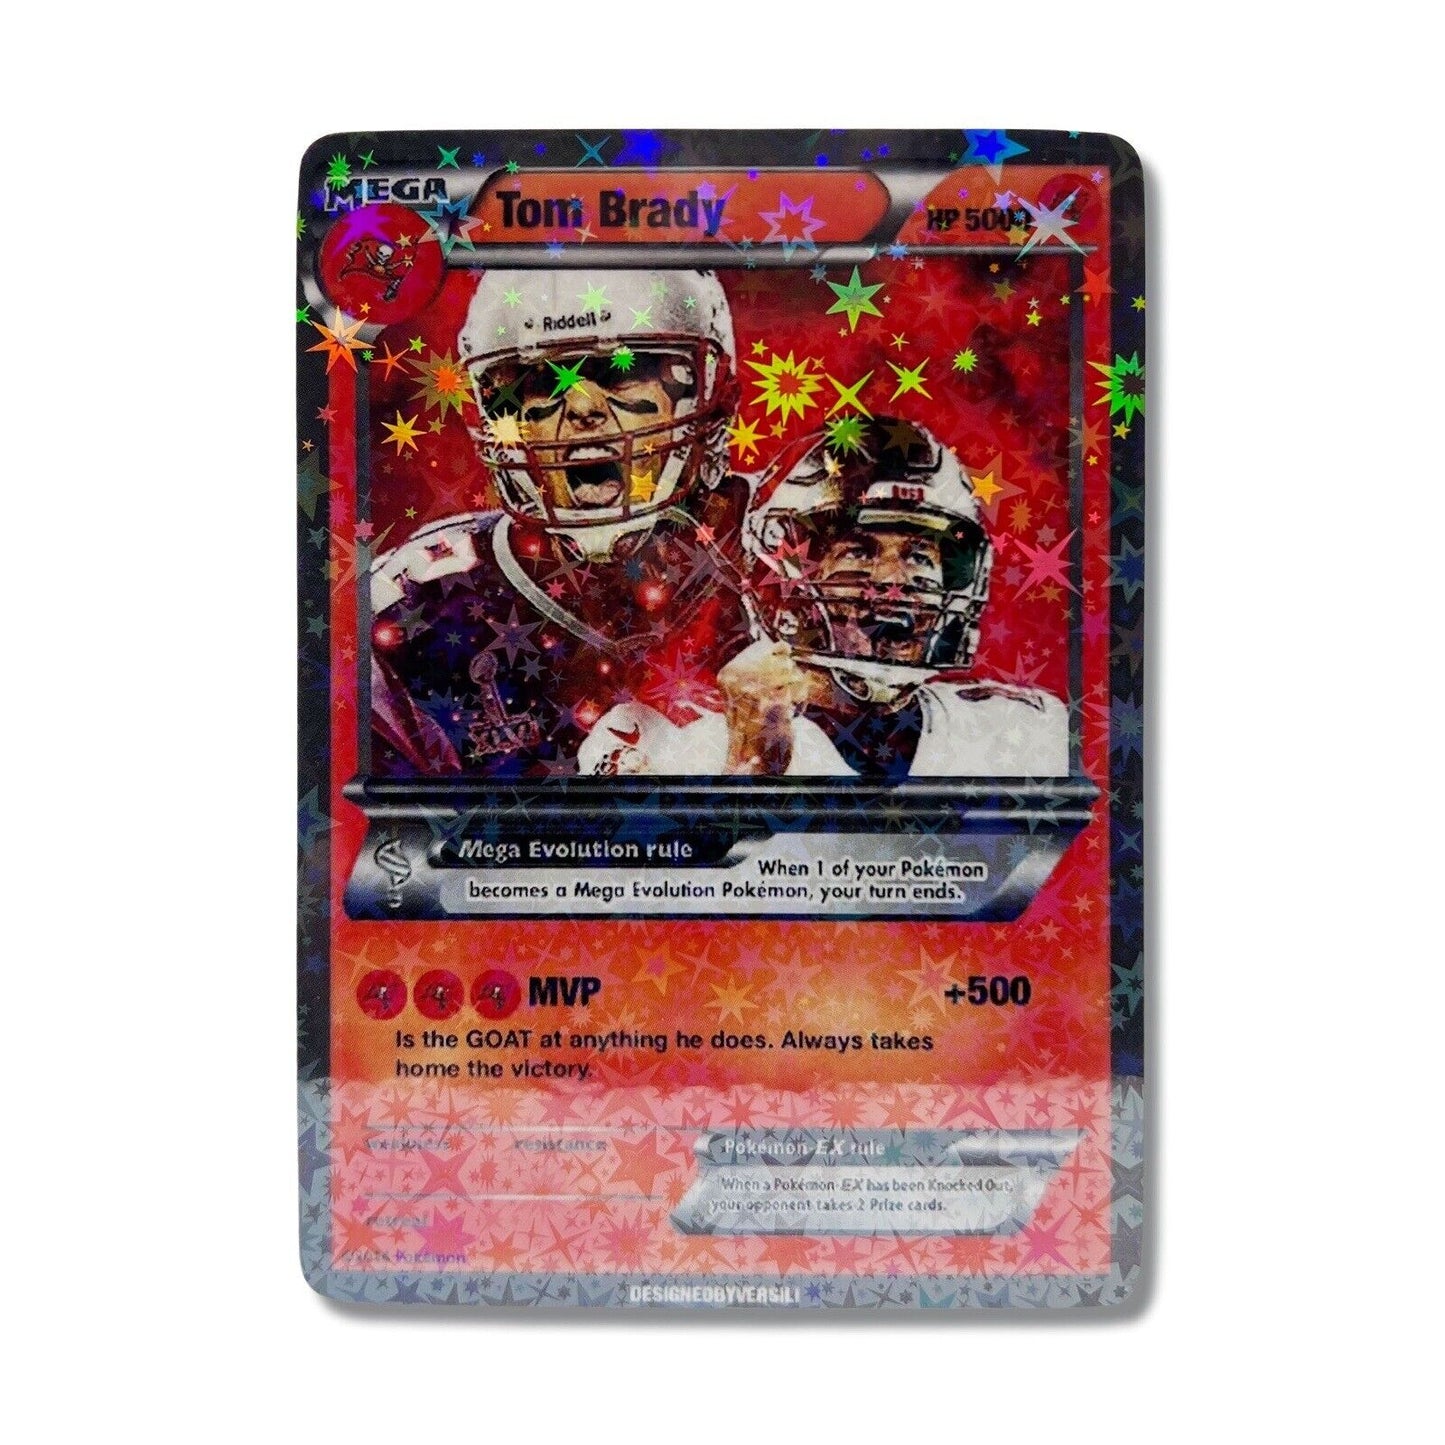 Tom Brady Pokémon Card